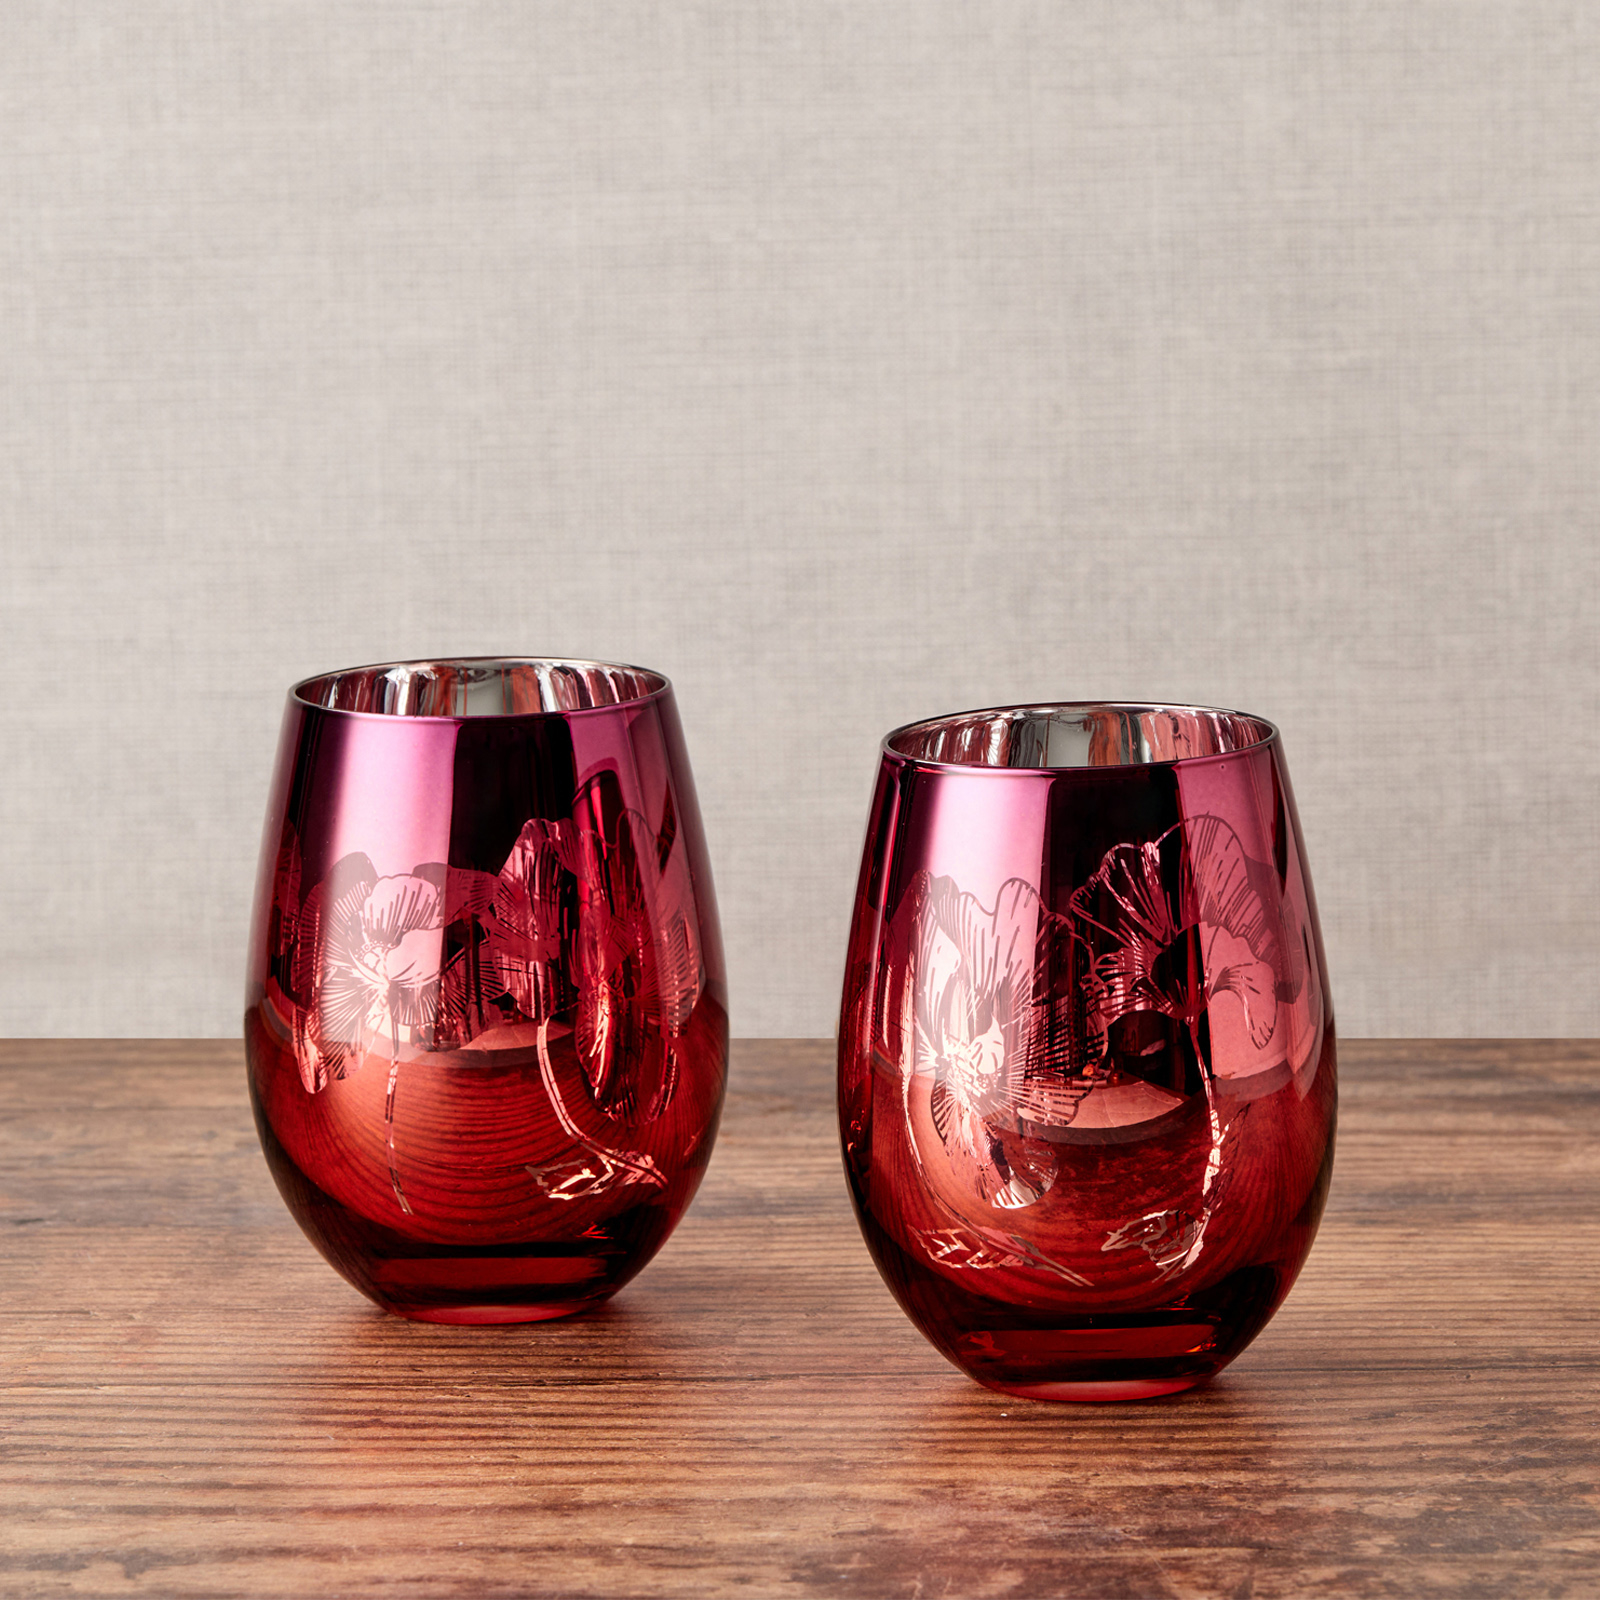 Visuel deLot de 2 verres by Artland - Bloom Magnifiquement décorés avec un design détaillé rose, orange et argent, ces délicats verres comportent un bouquet de fleurs miroir, le tout sur un bol incurvé peu profonde.